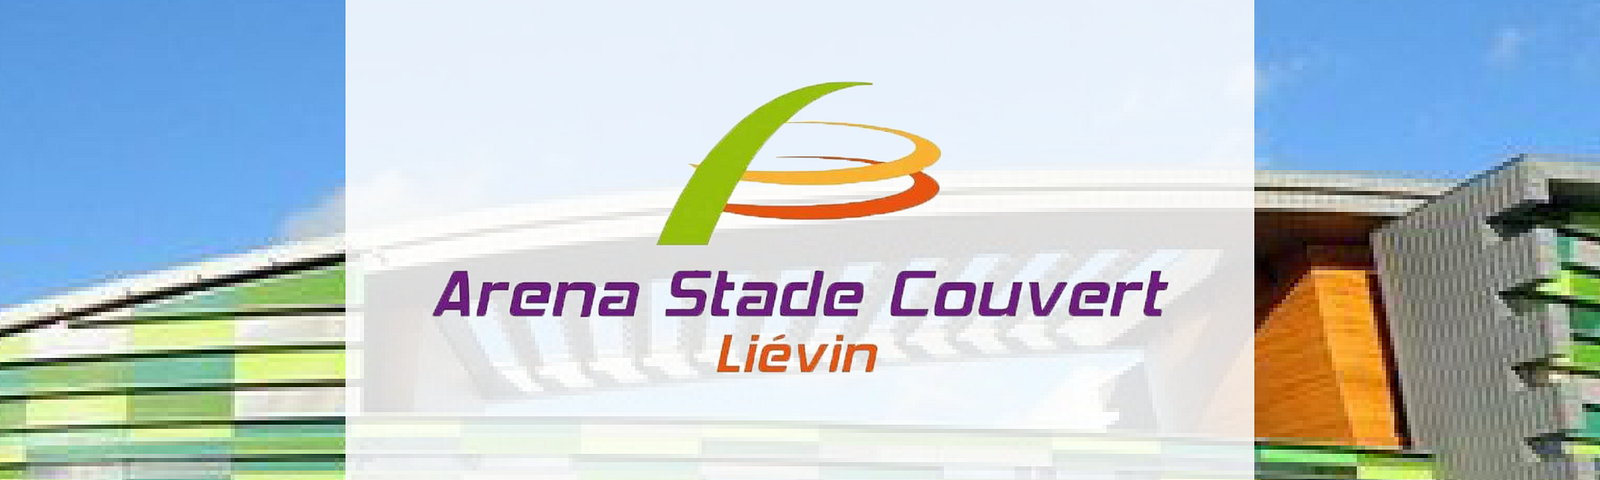 Visuel nouveau client Arena Stade Liévin